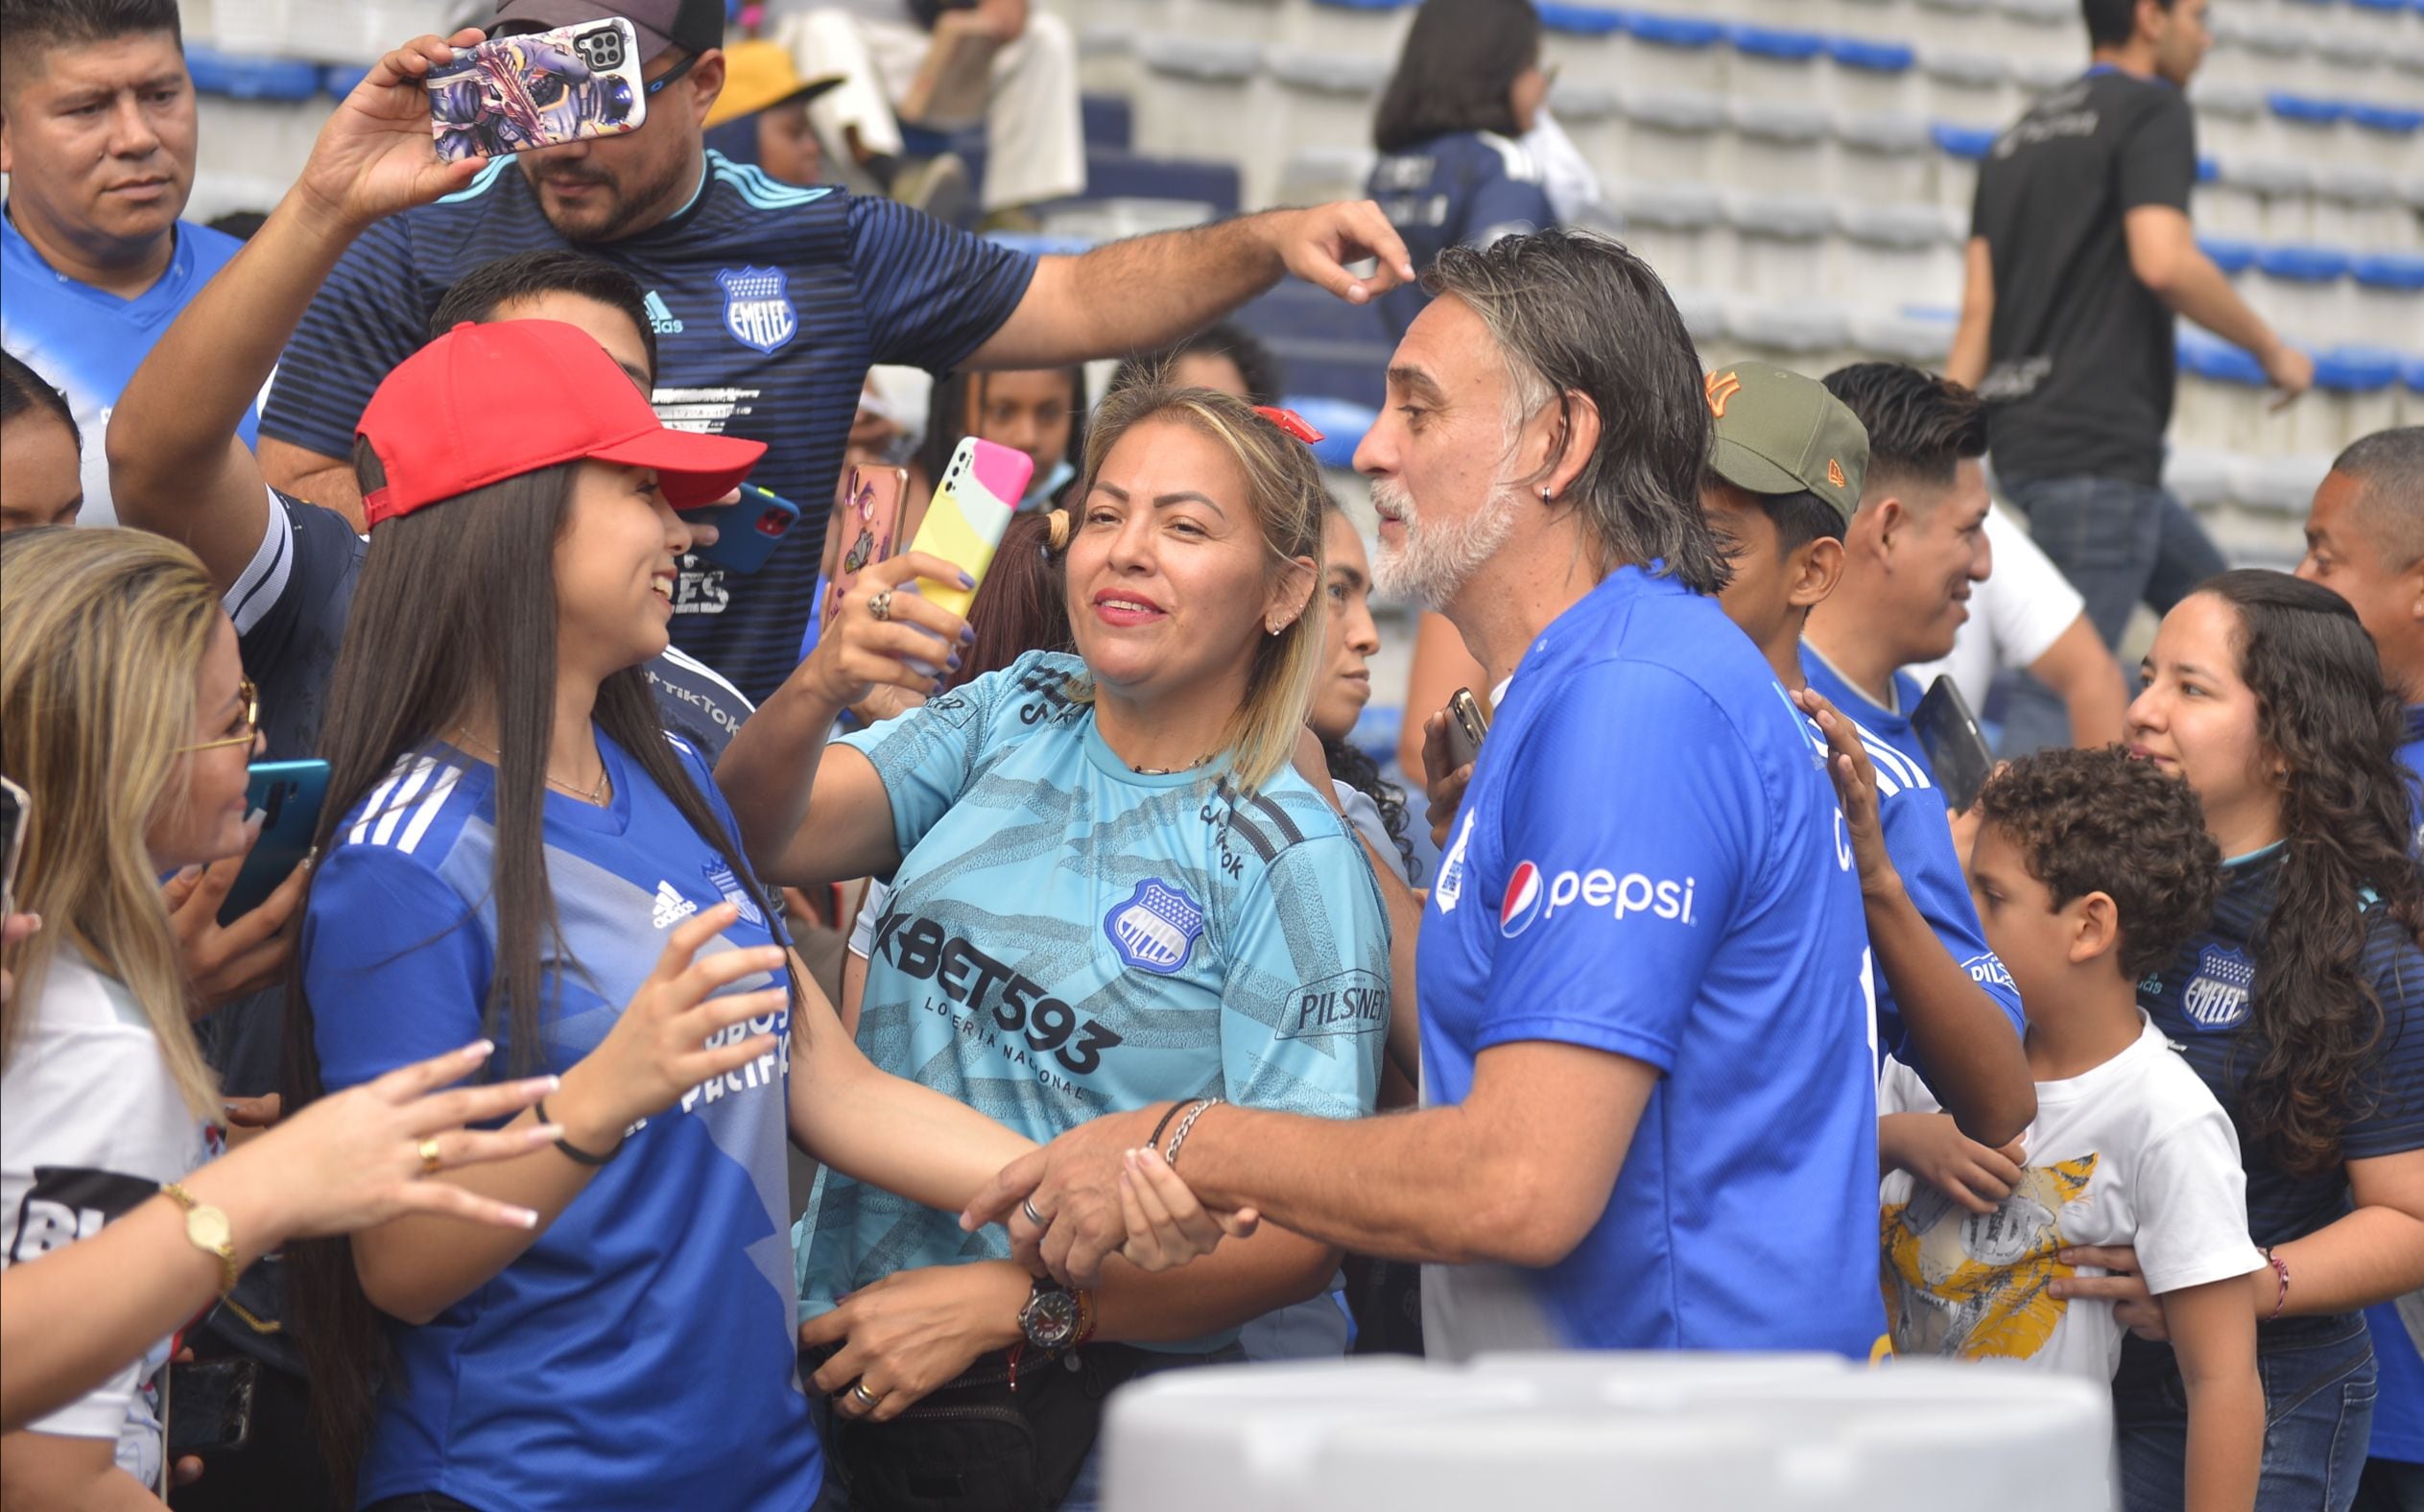 Carlos Alberto ‘Cuqui’ Juárez y la situación de Emelec en la Liga Pro: ‘Duele verlo de esta manera, con muy poca actitud dentro de la cancha’